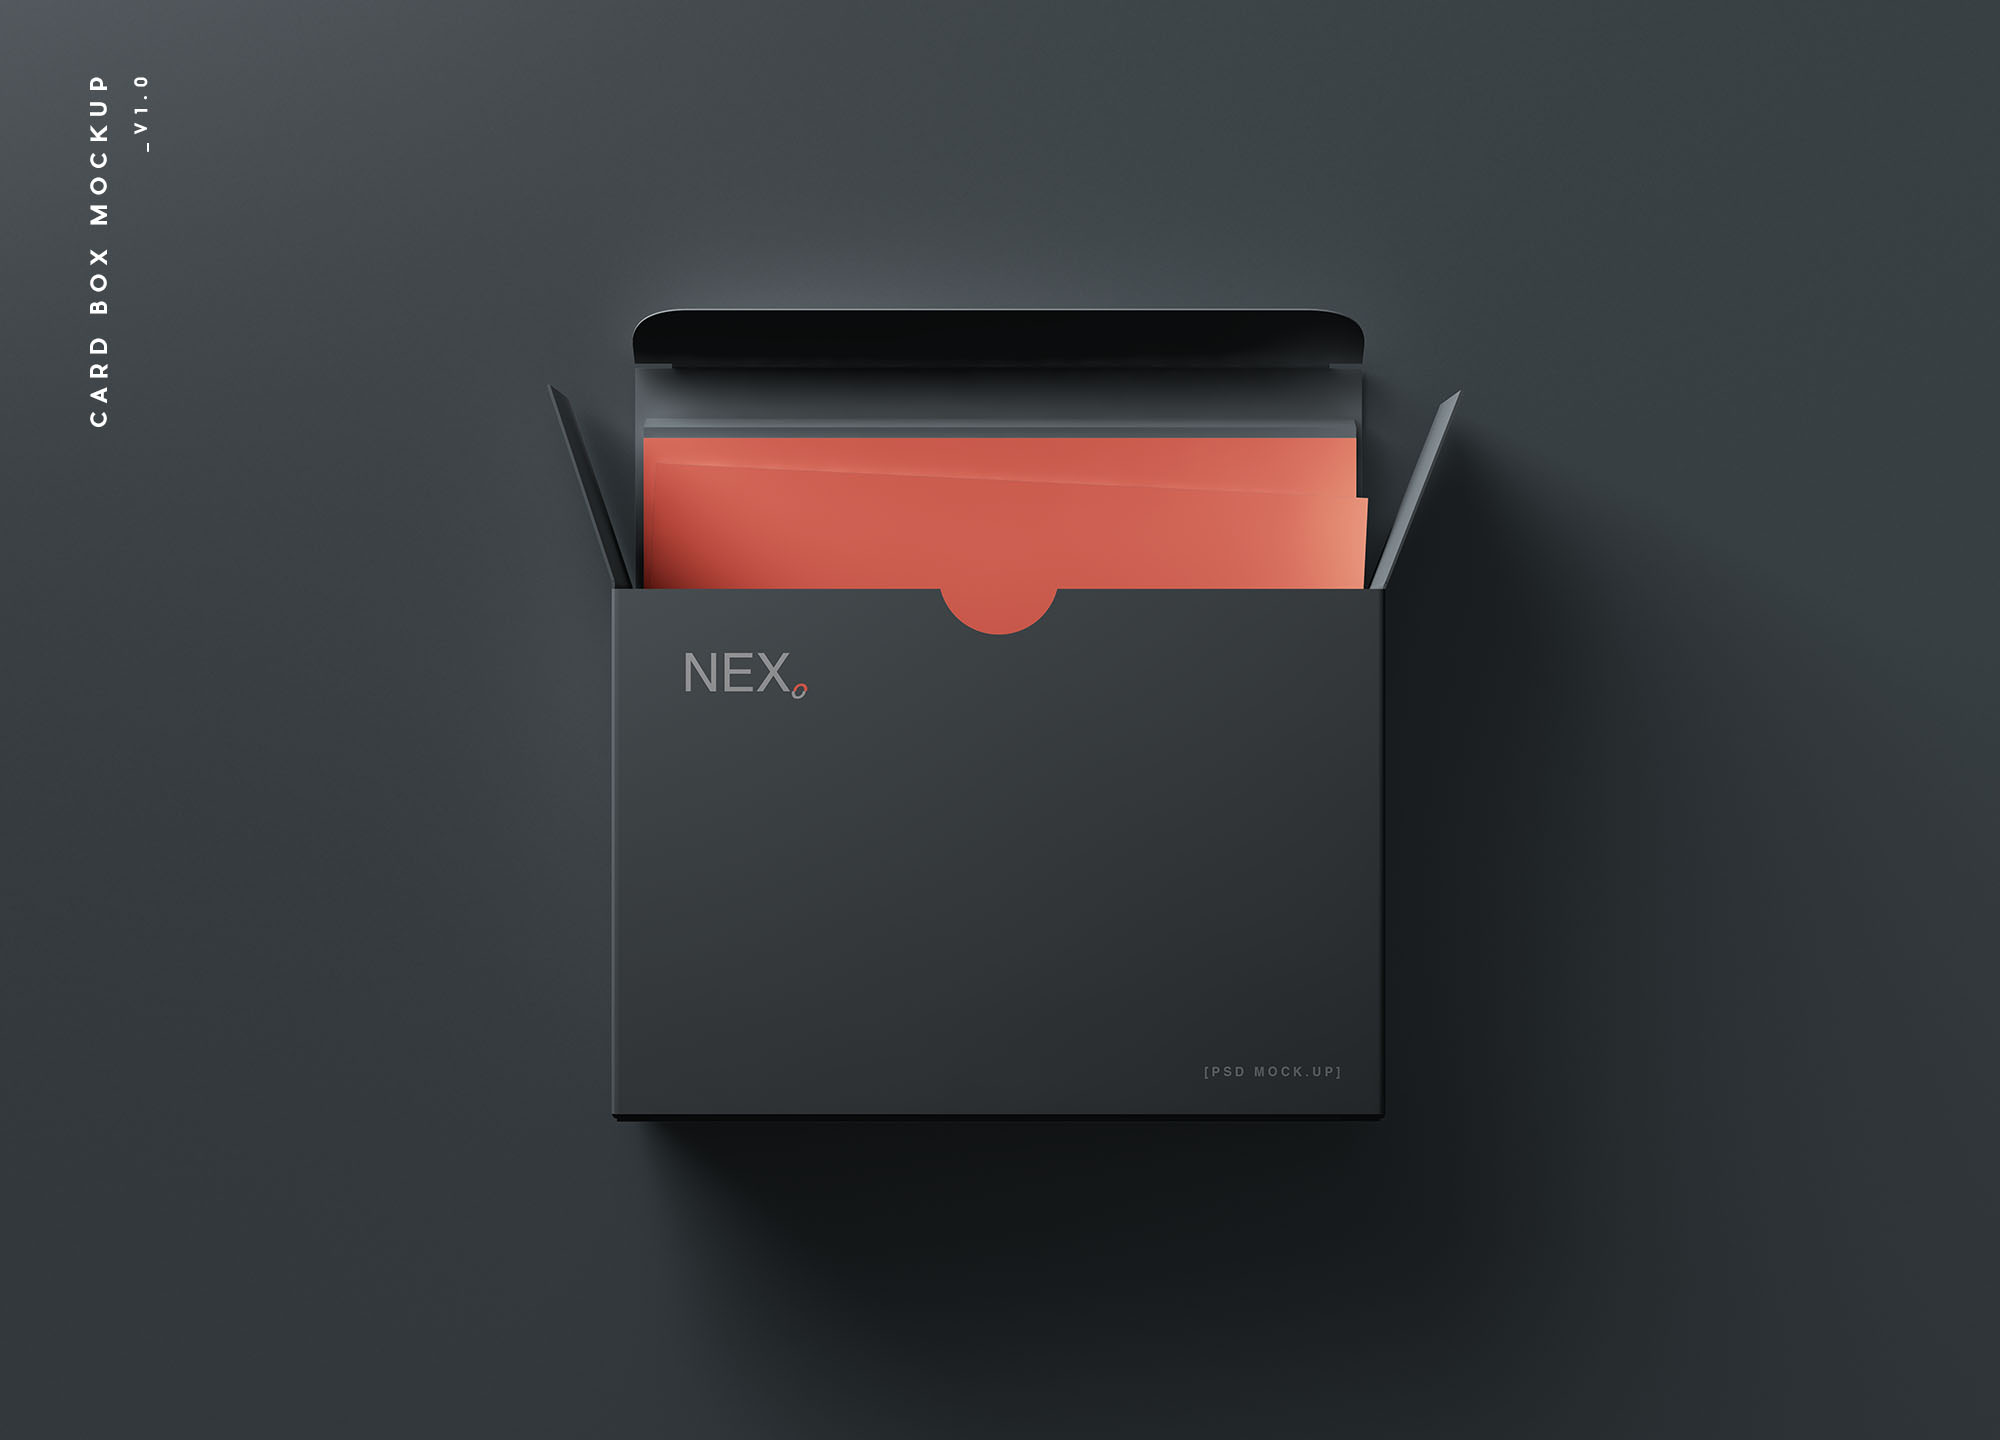 卡片包装盒外观设计效果图素材中国精选 Card Box Mockup插图